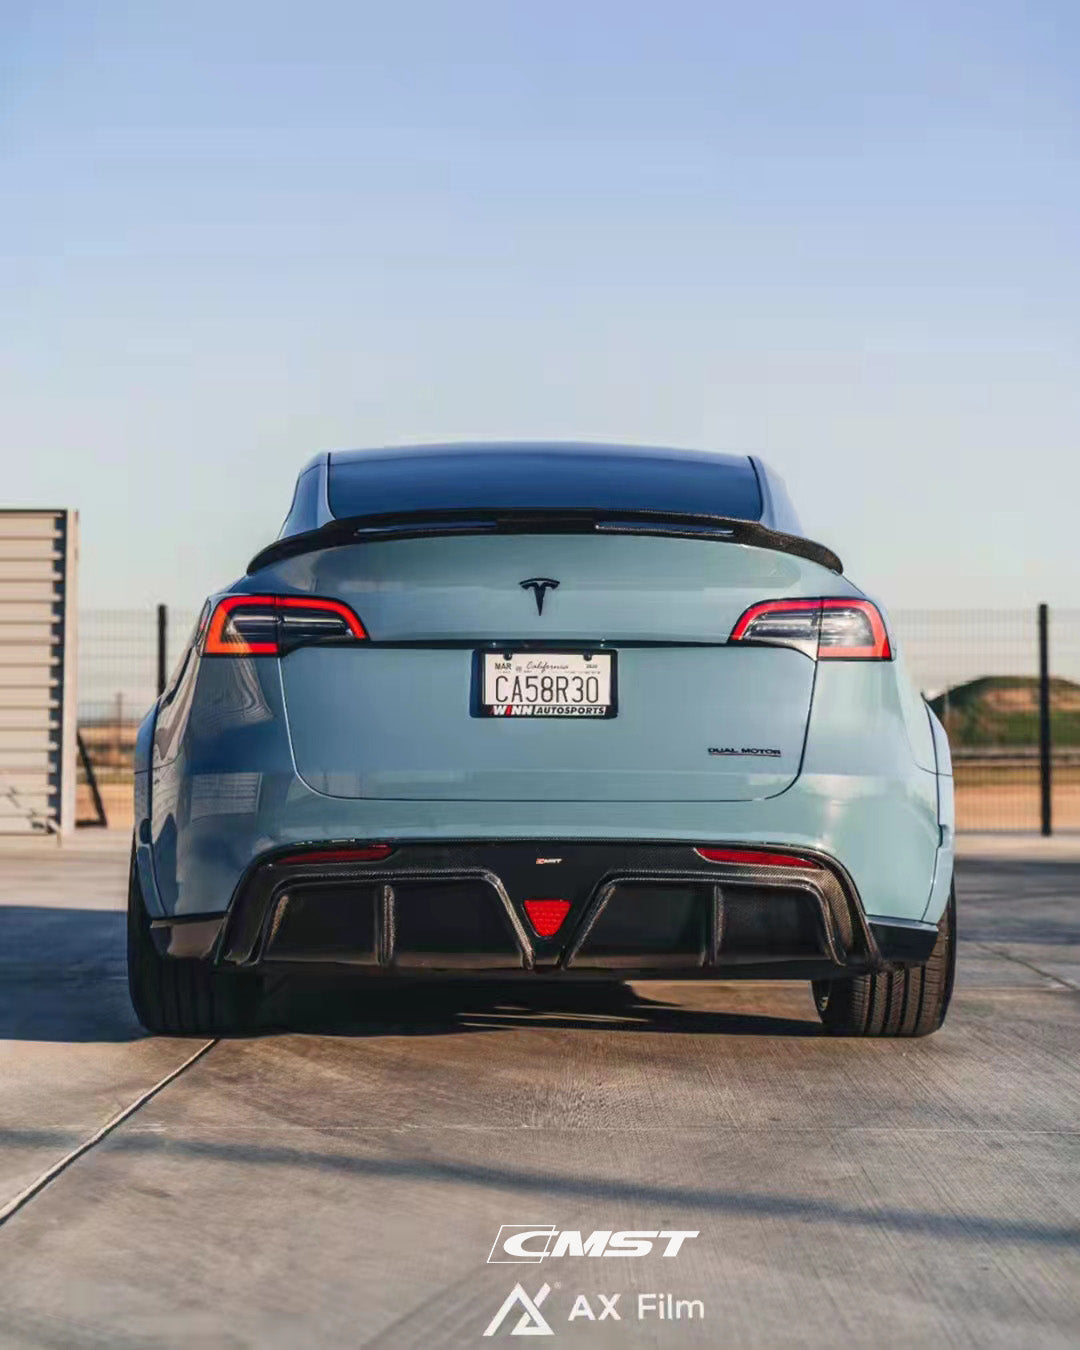 CMST Carbon Fiber Rear Spoiler Ver.1 for Tesla Model Y